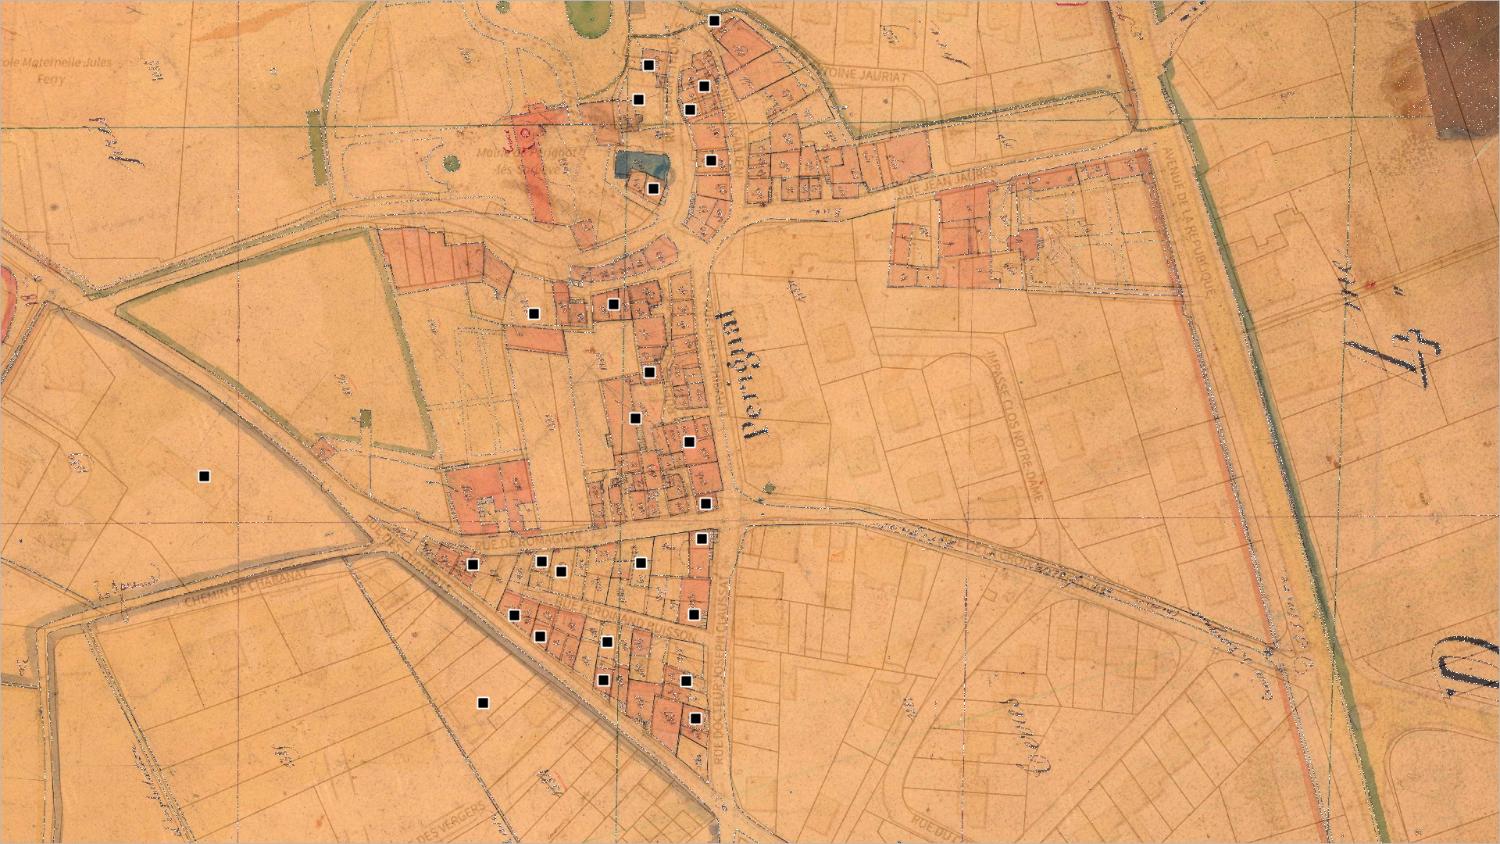 Commune de Pérignat-lès-Sarliève (sud) : localisation des maisons vigneronnes (cadastre dit napoléonien, 1831, AD Puy-de-Dôme, 51 Fi 880)